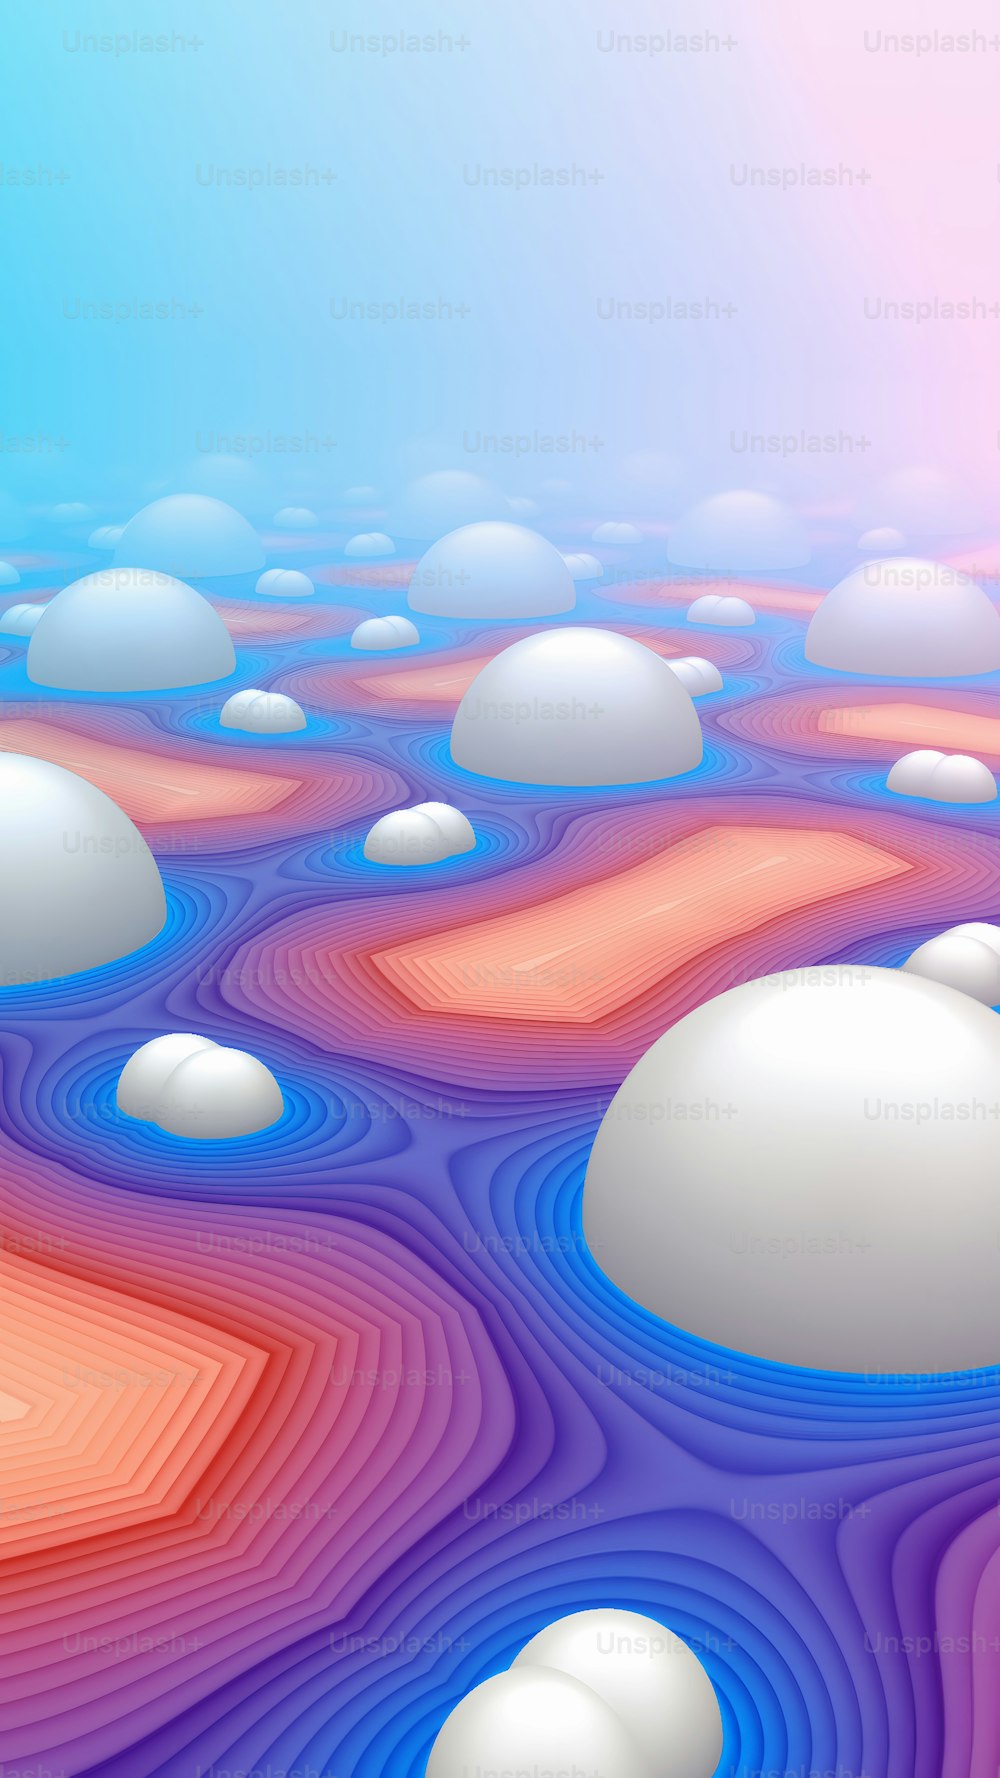 Una imagen generada por computadora de un paisaje colorido